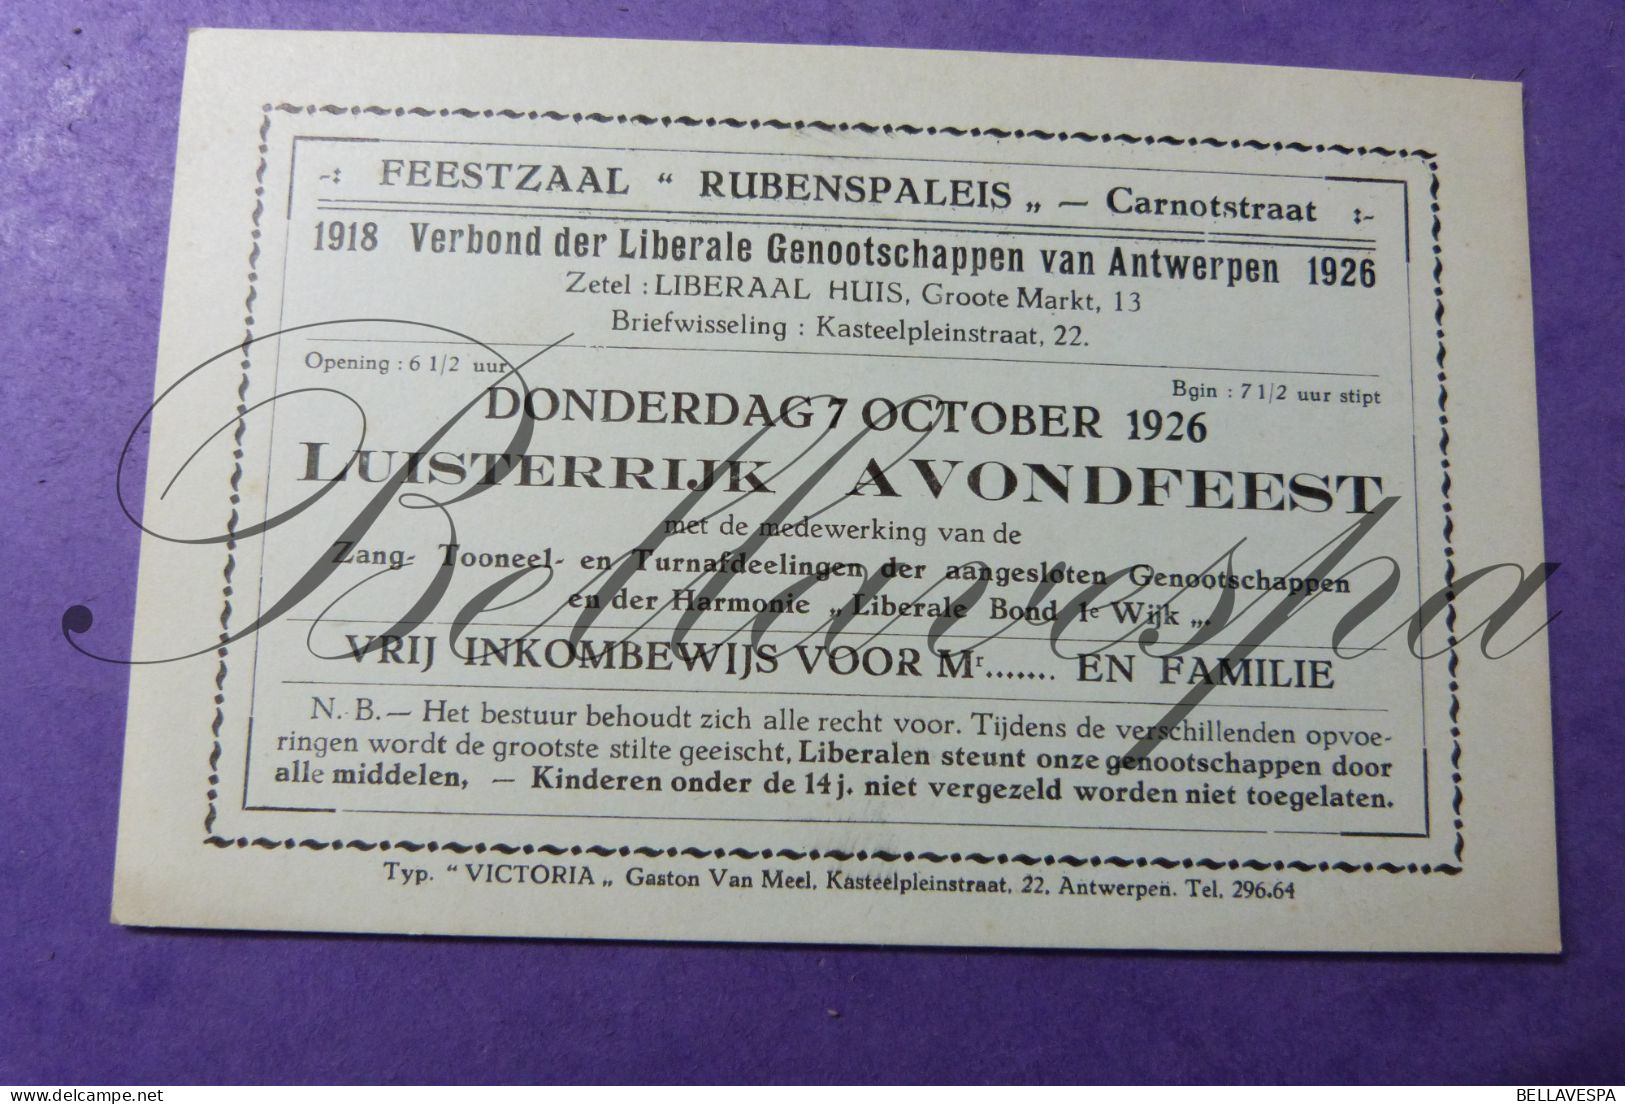 Feestzaal Rubenspaleis Carnotstr Antwerpen Liberaal Liberale Genootschap 1926 Avondfeest Harmonie Liberale Bond Ie Wijk - Tickets - Vouchers